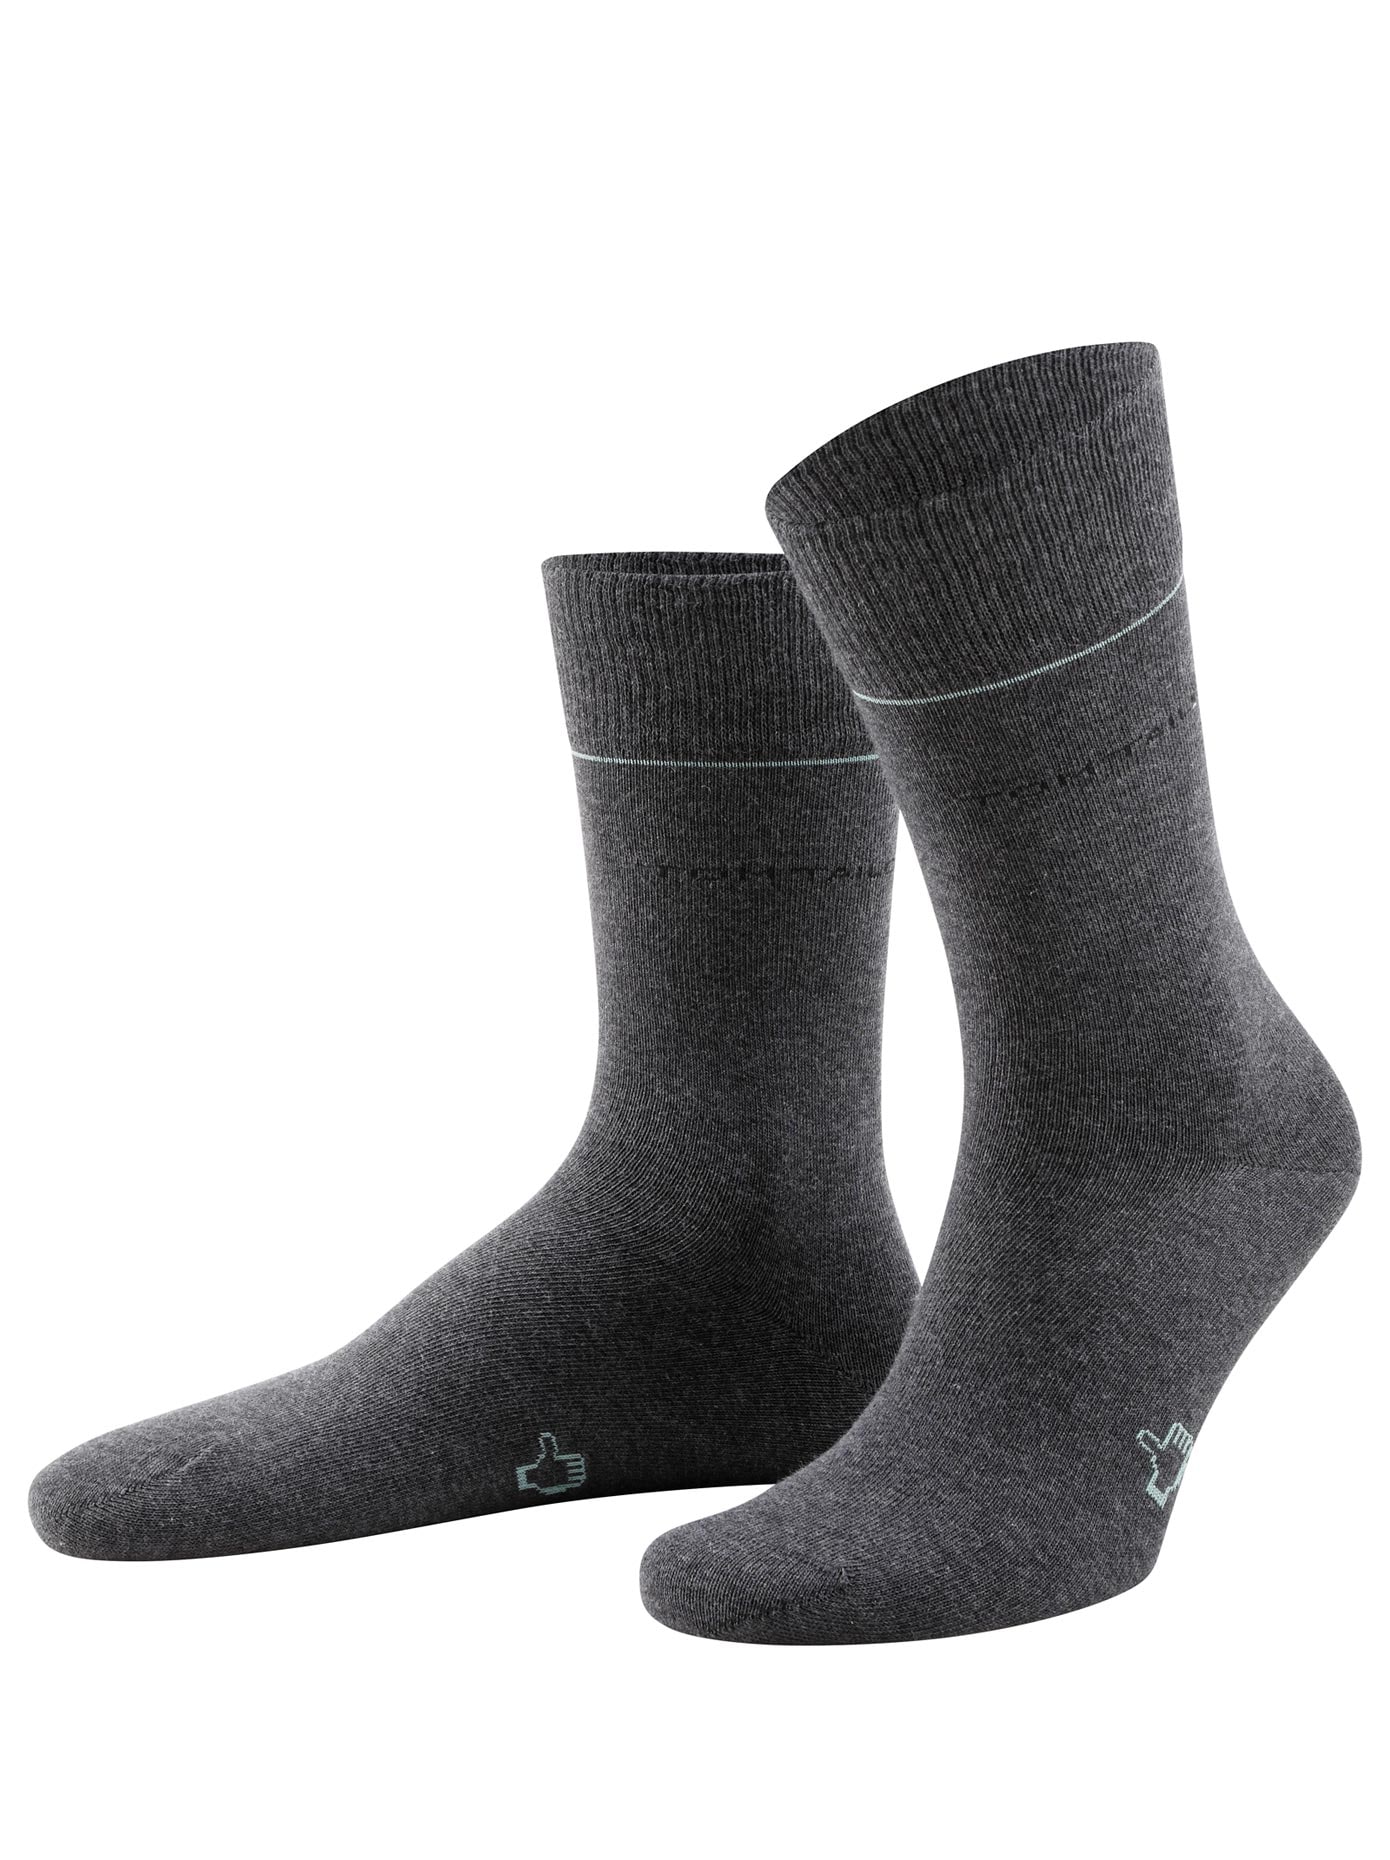 Strümpfe & bestellen Mindestbestellwert ohne Socken ➤